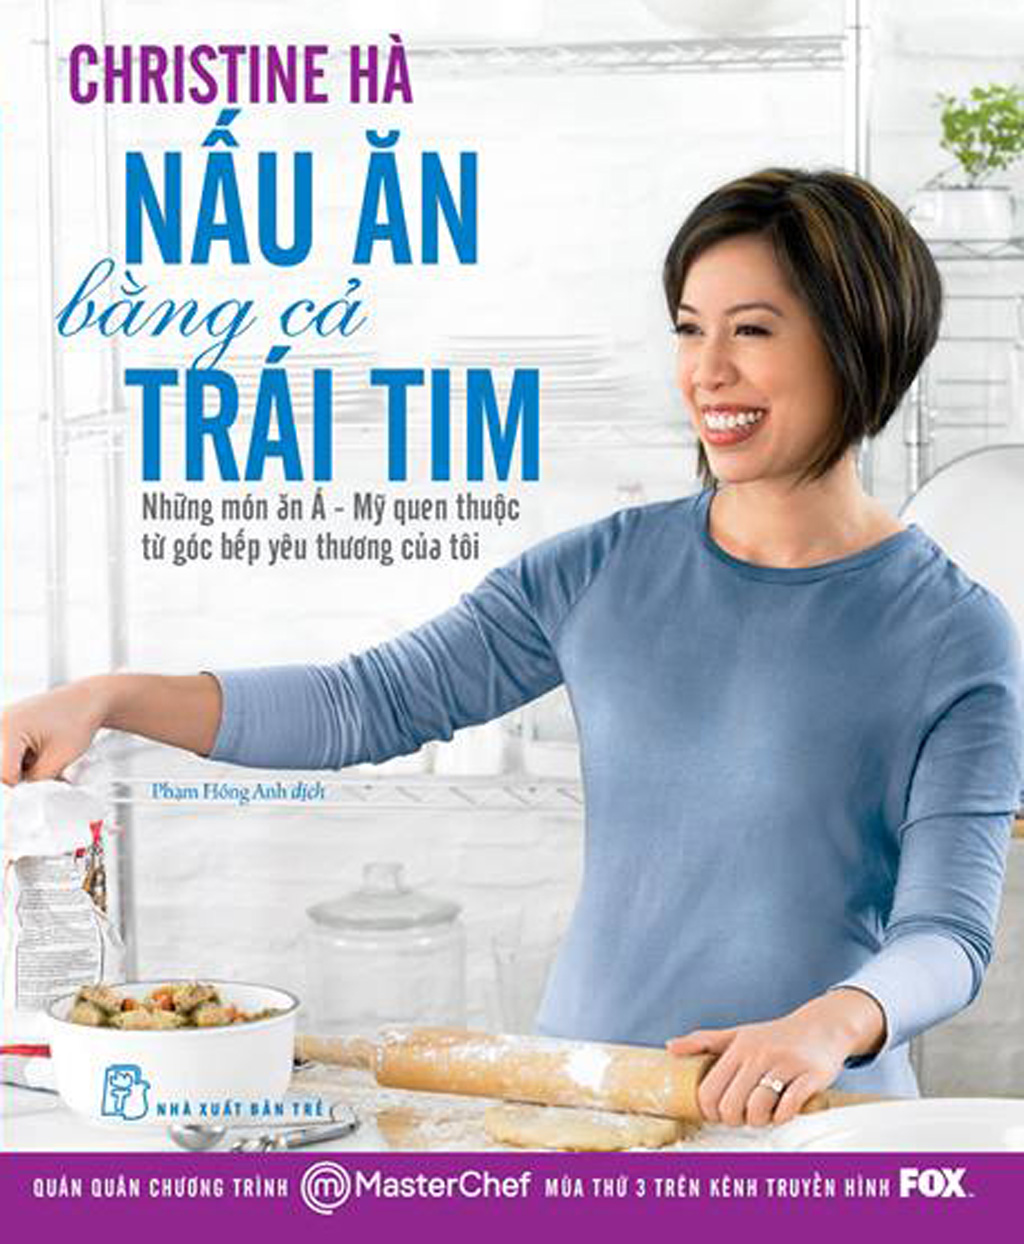 Trò chuyện với Master Chef Christine Hà 2